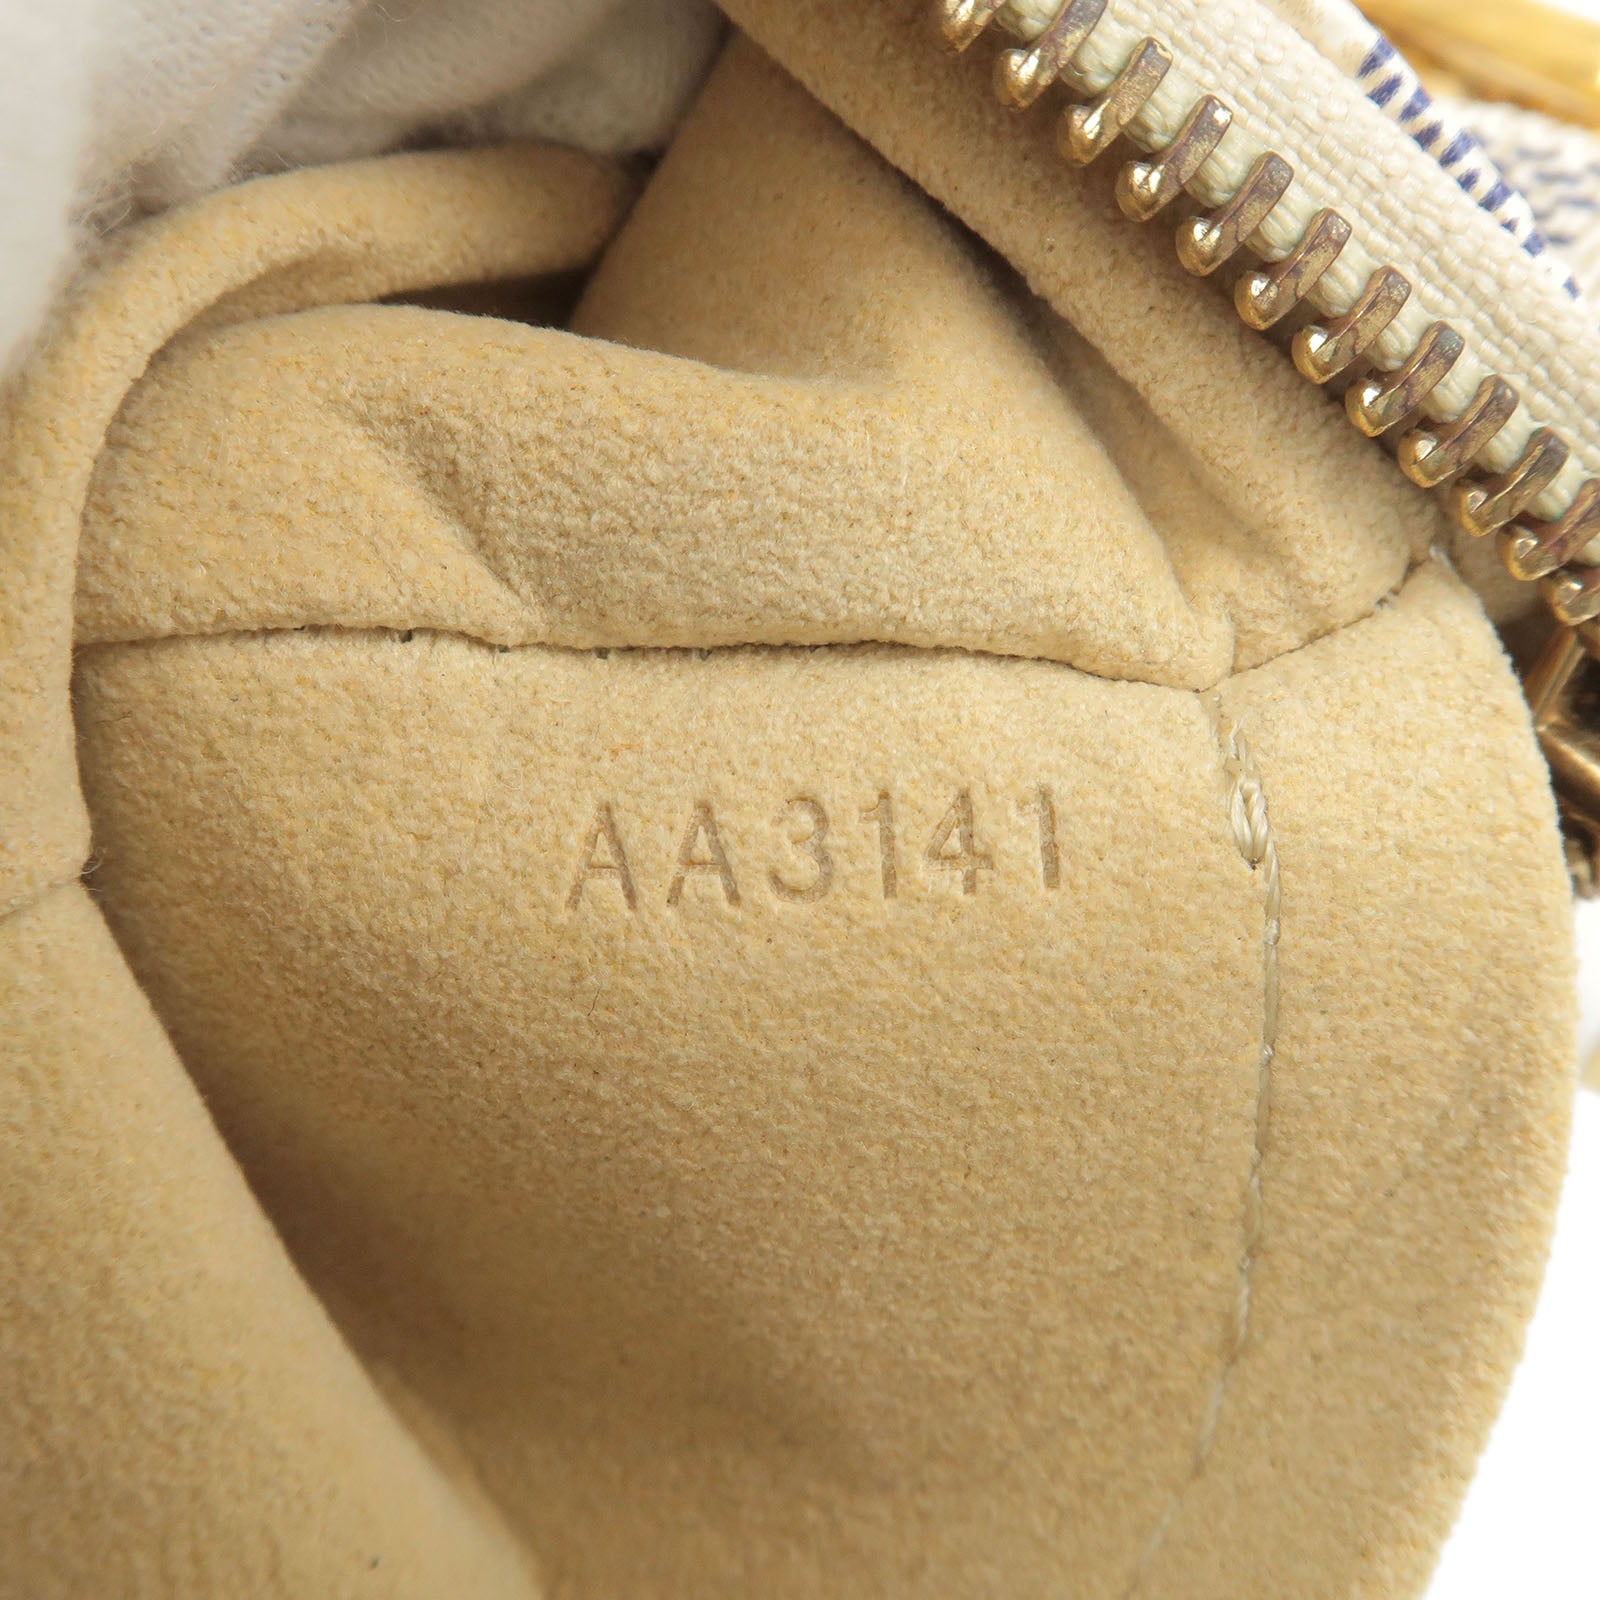 Mila - MM - Azur - Vuitton - N60027 – Белые женские кошельки Louis Vuitton  - Damier - Pochette - Louis Vuitton Brazza Wallet In Taiga 7.5in 19cm Blac